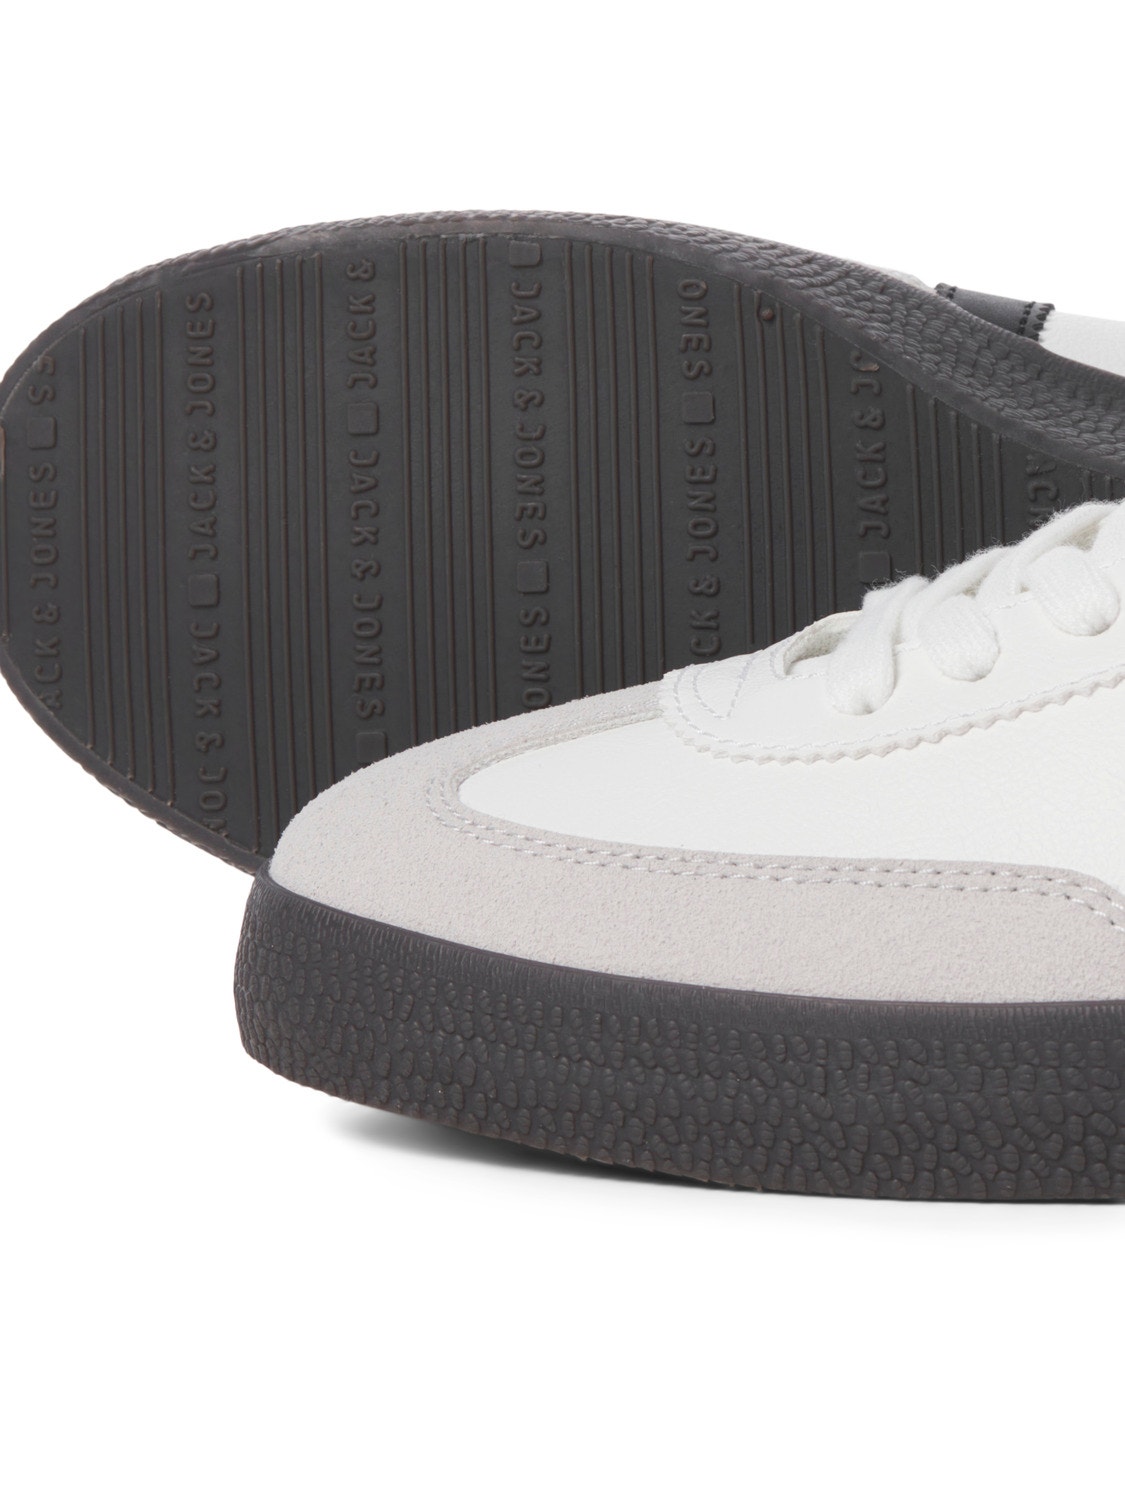 Jack & Jones Rubber Sneaker -Bright White - 12257190